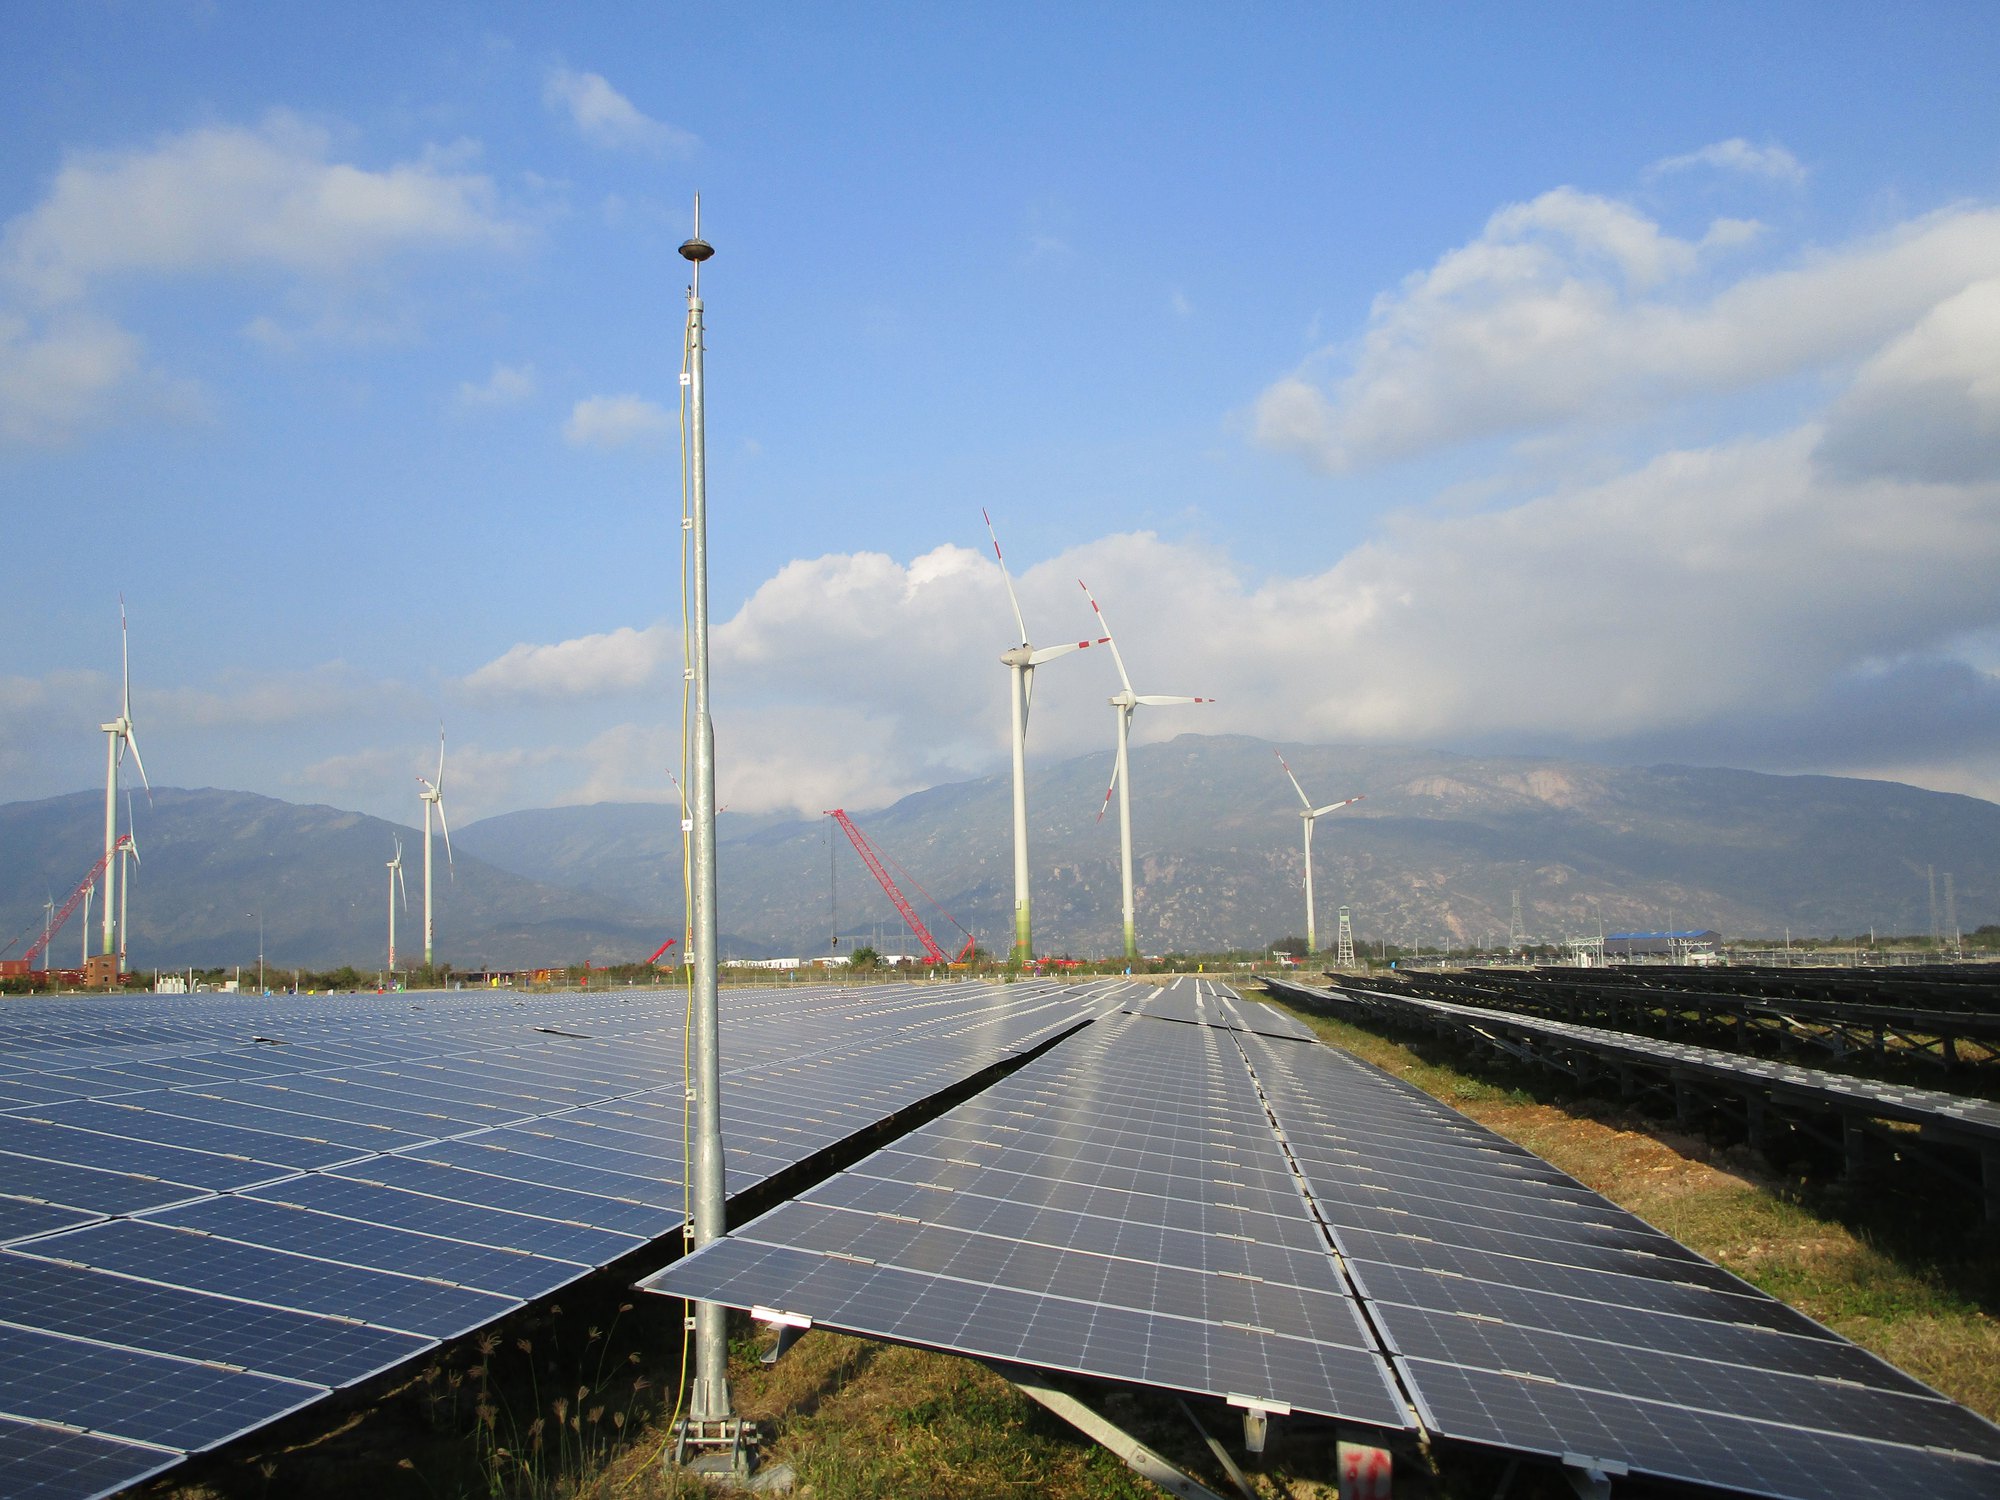 Năng lượng tái tạo giúp thúc đẩy nhiều mặt kinh tế - xã hội tại Ninh Thuận